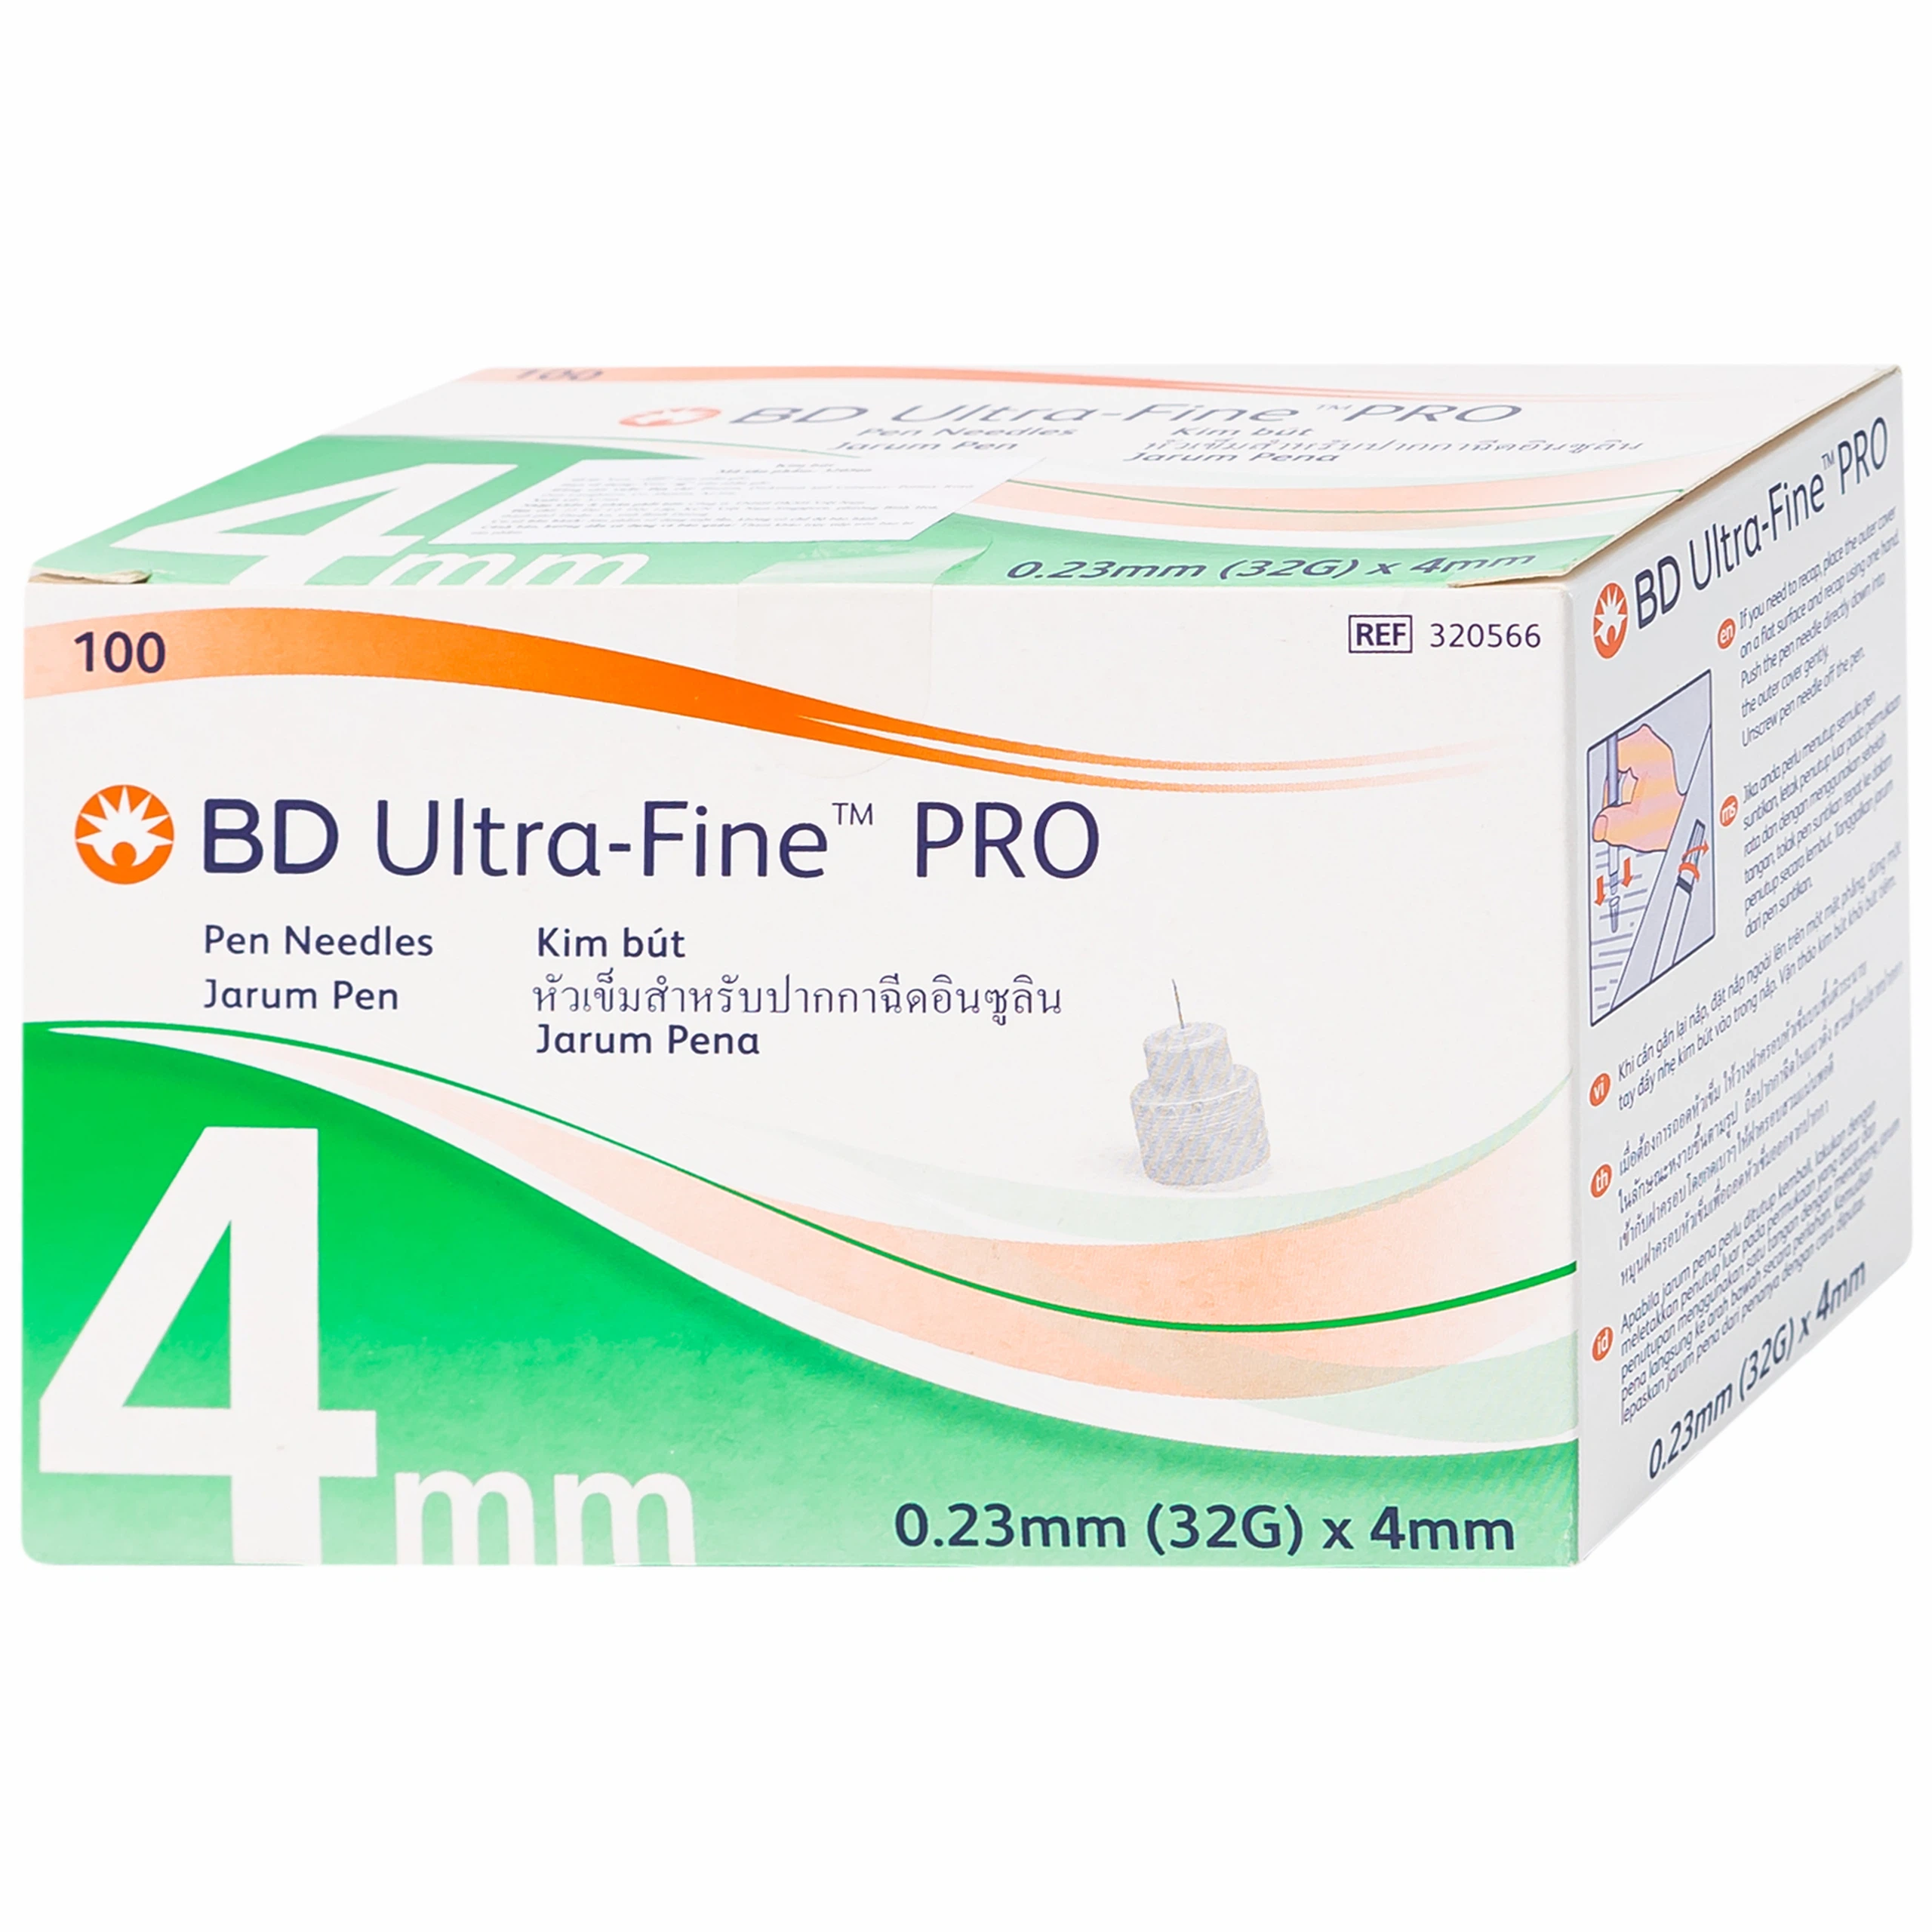 Kim bút BD Ultra - Fine Pro xuyên qua da dễ dàng, không gây đau đớn khi tiêm (4mm x 32g - 100 cây)